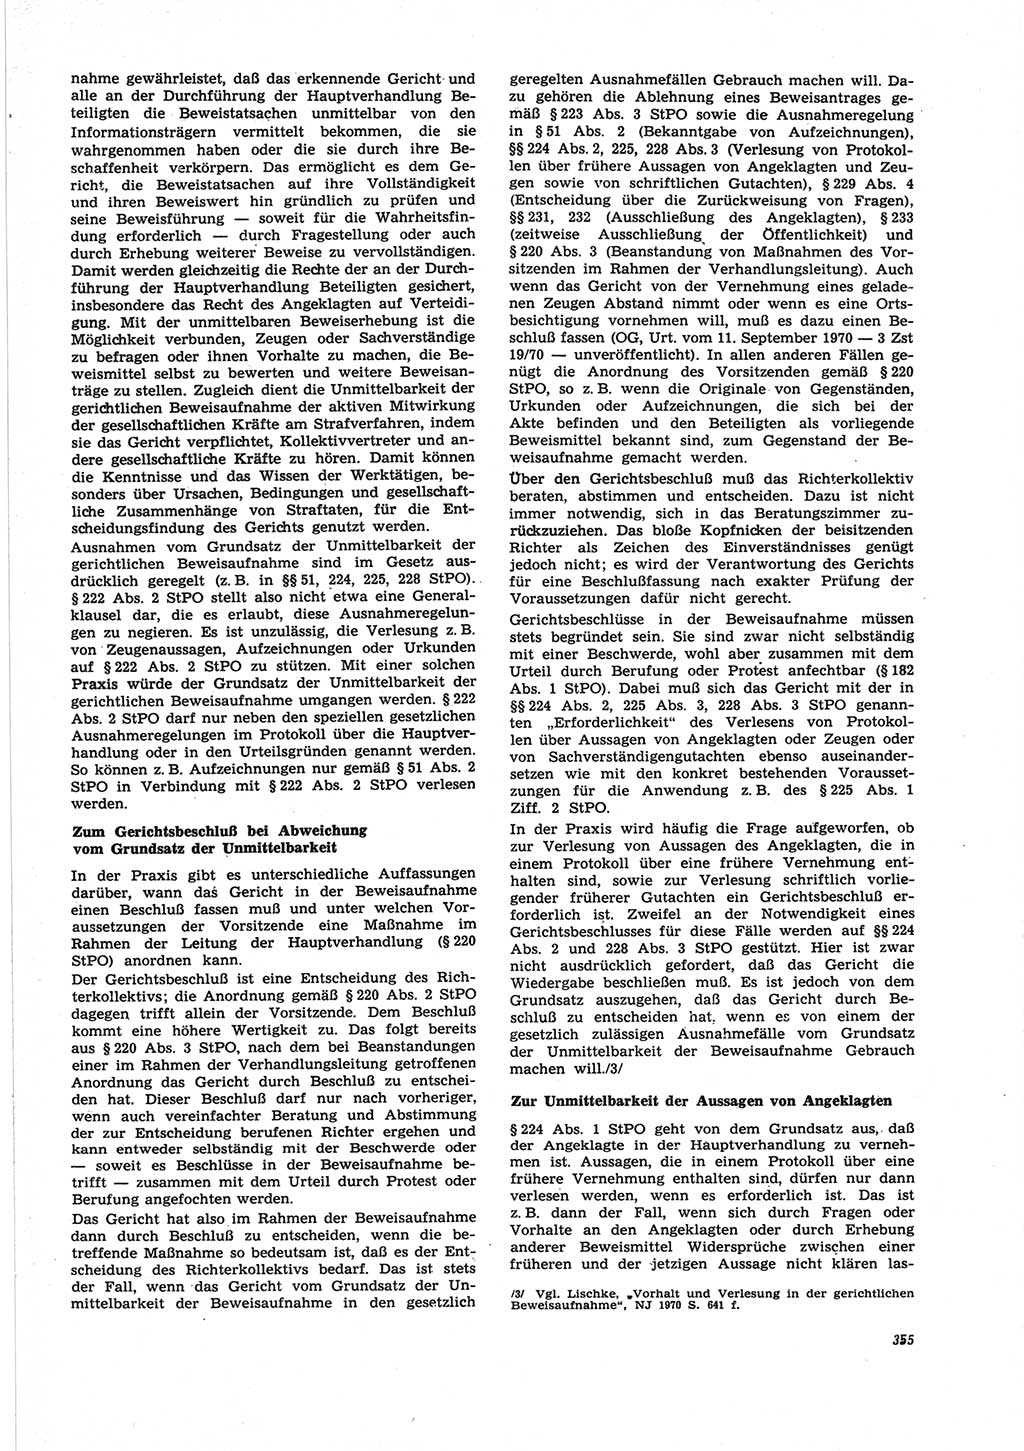 Neue Justiz (NJ), Zeitschrift für Recht und Rechtswissenschaft [Deutsche Demokratische Republik (DDR)], 25. Jahrgang 1971, Seite 355 (NJ DDR 1971, S. 355)